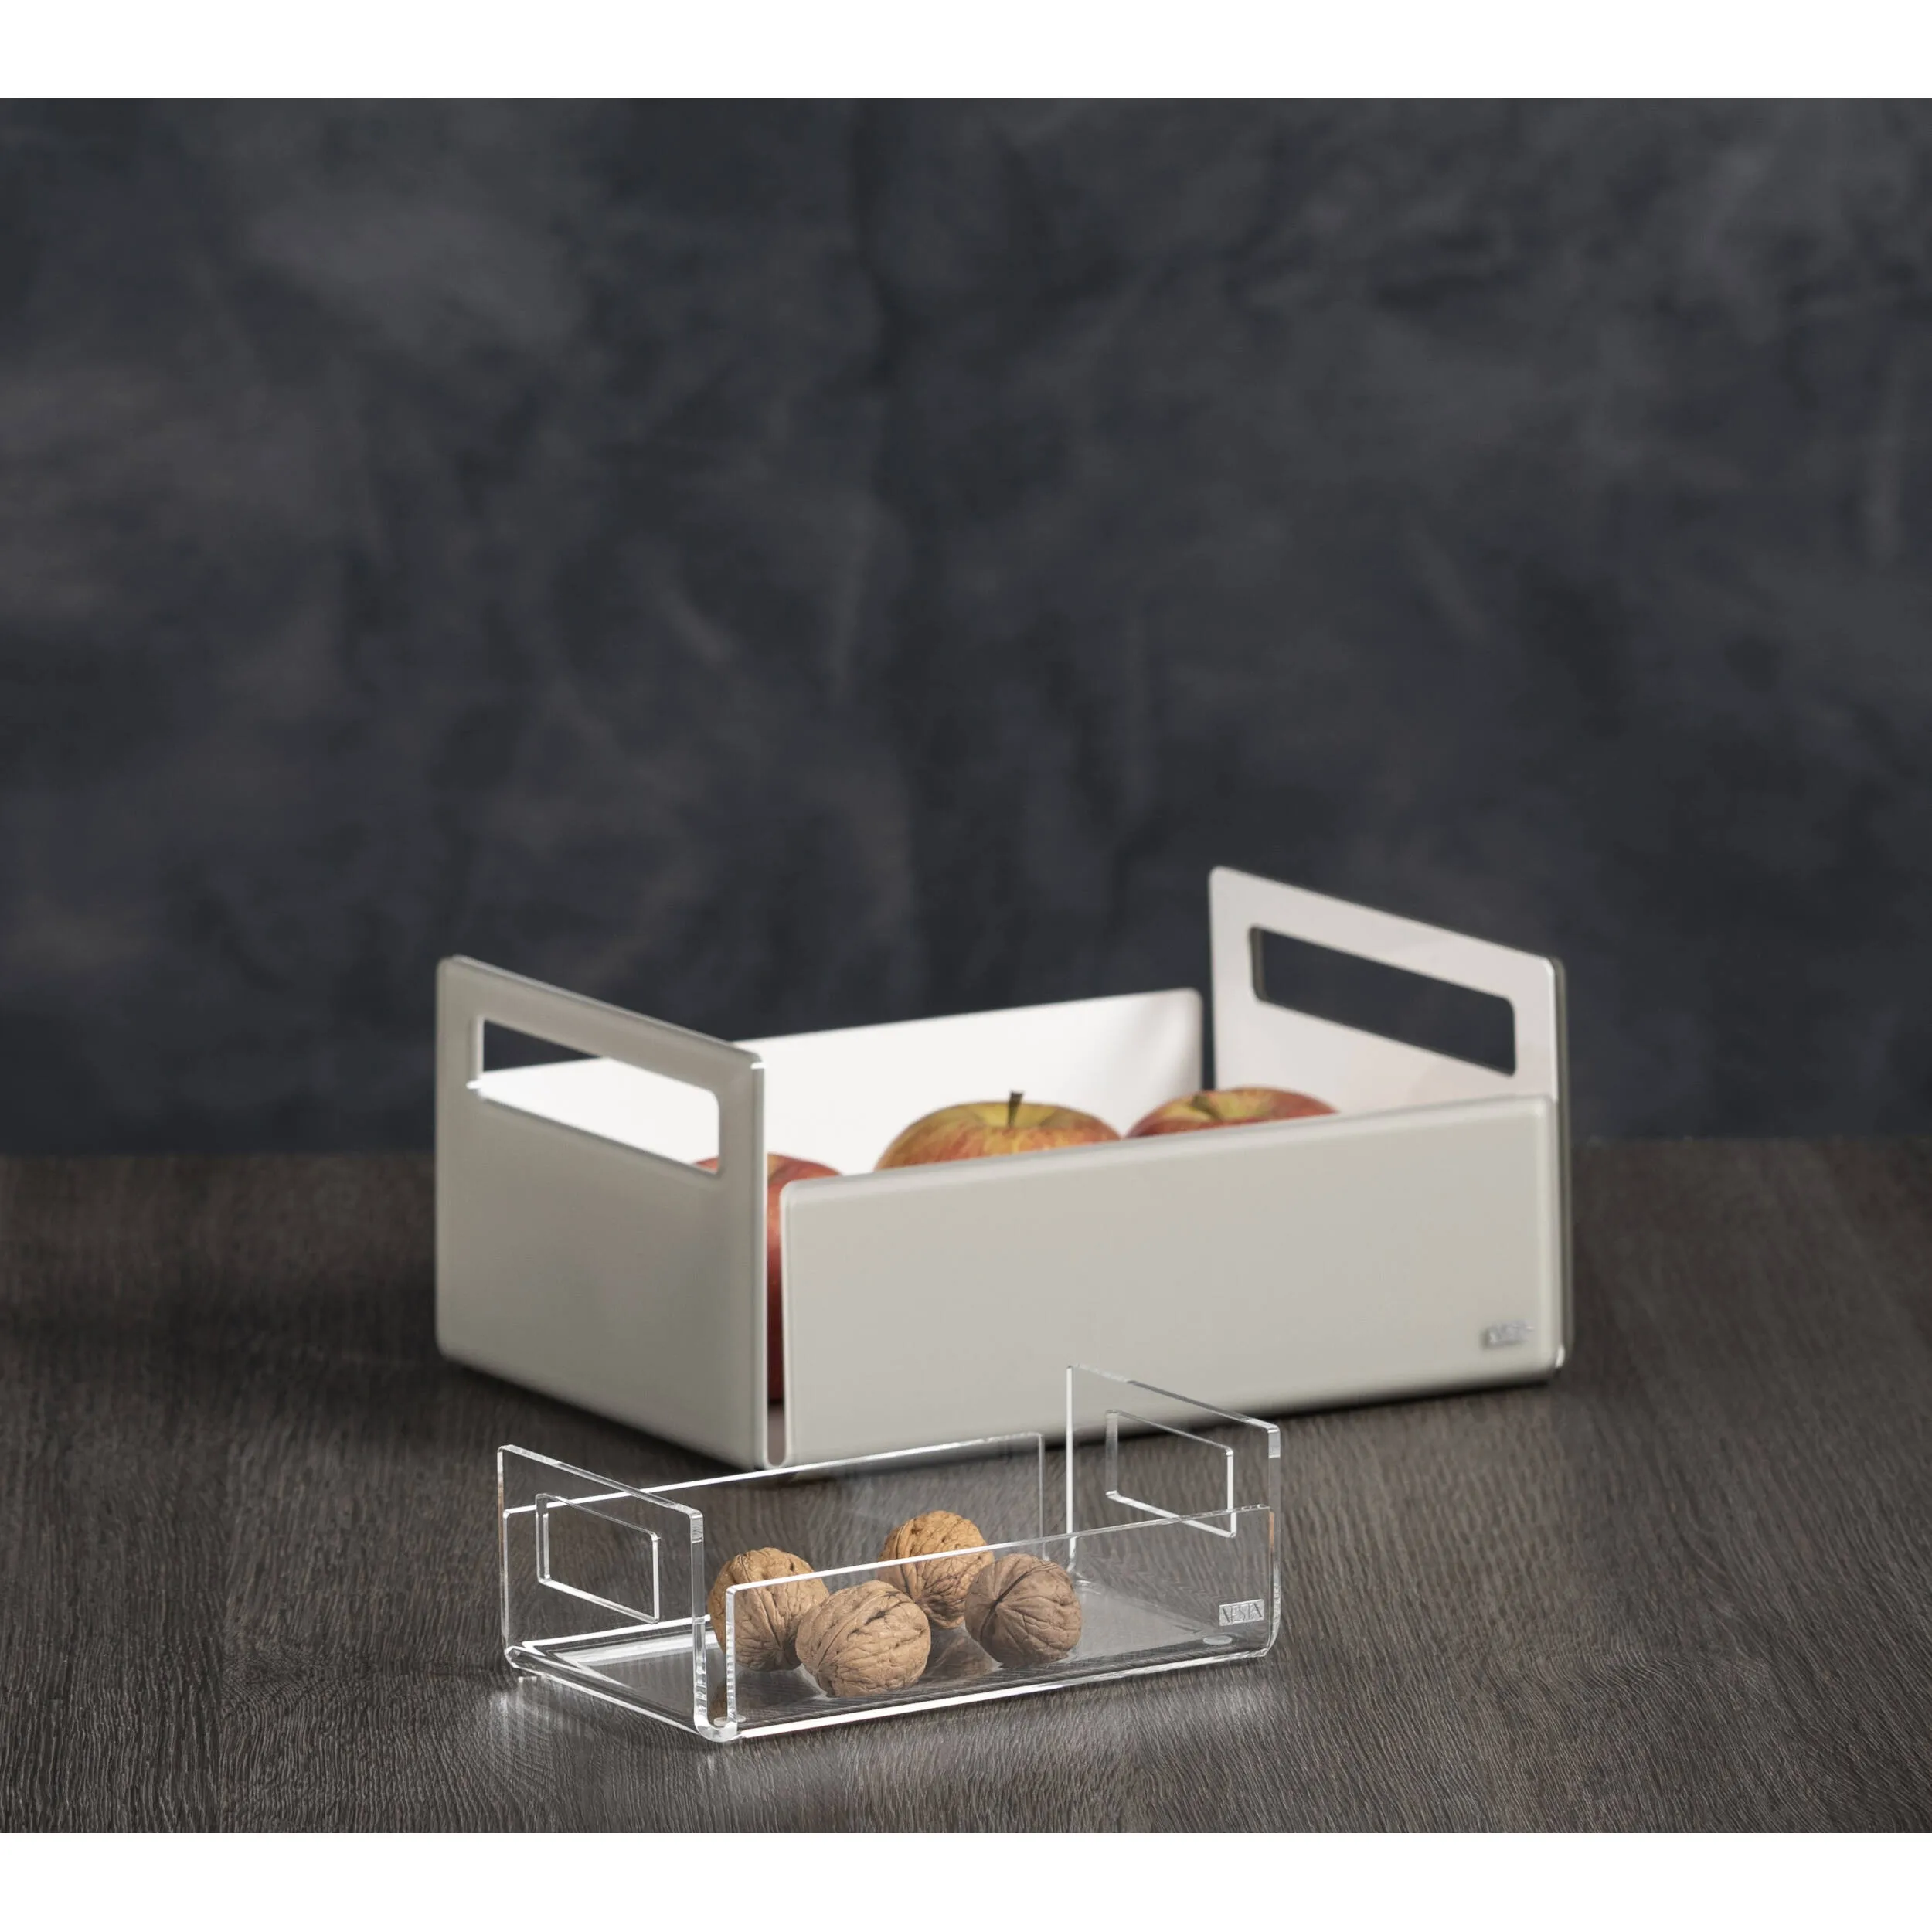 Cassetta porta frutta in cristallo acrilico Trasparente LIKE WATER 29x21xh13 cm design minimal Bianco satinato